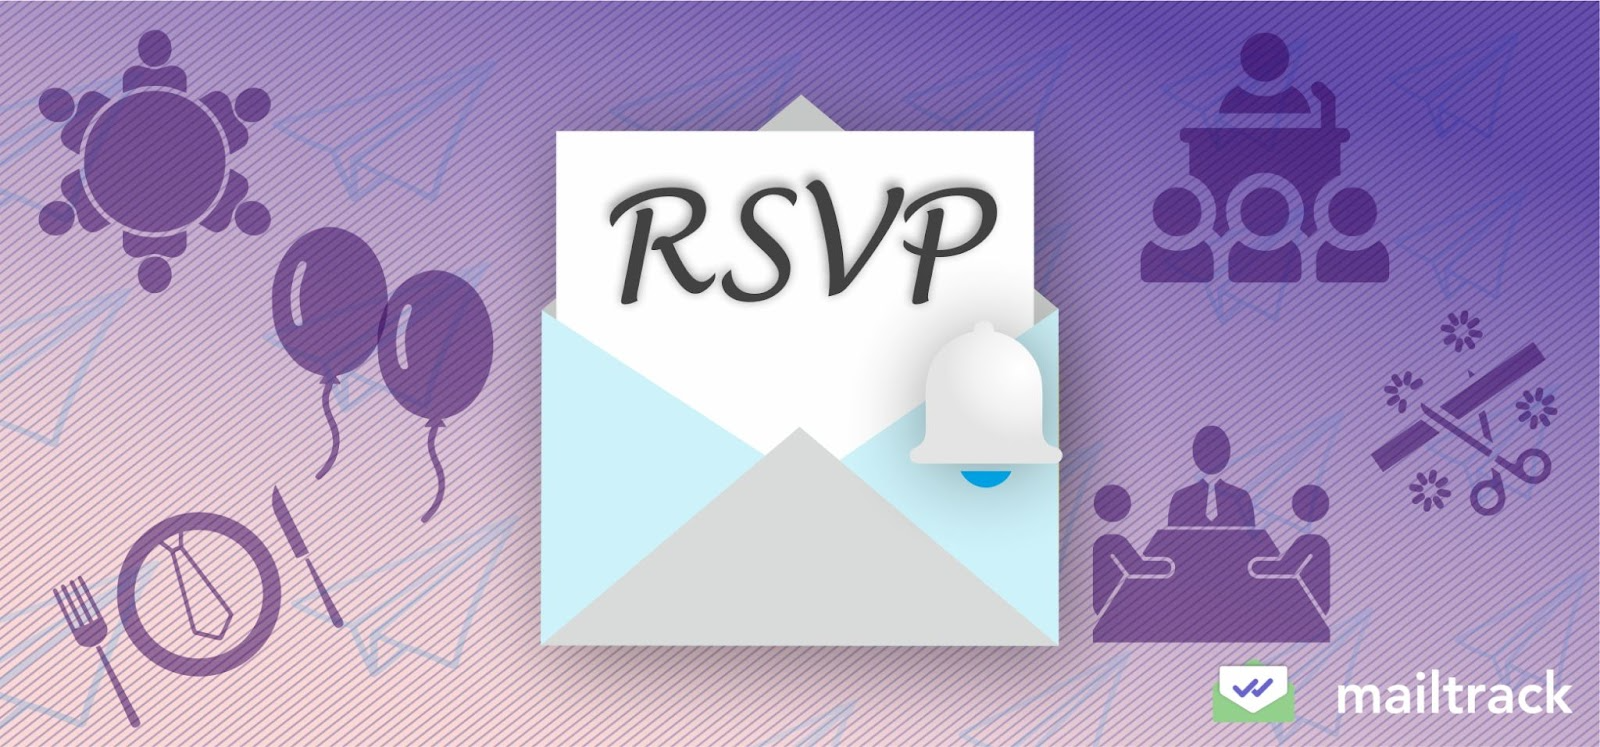 RSVP Reminder Wording for Your Event